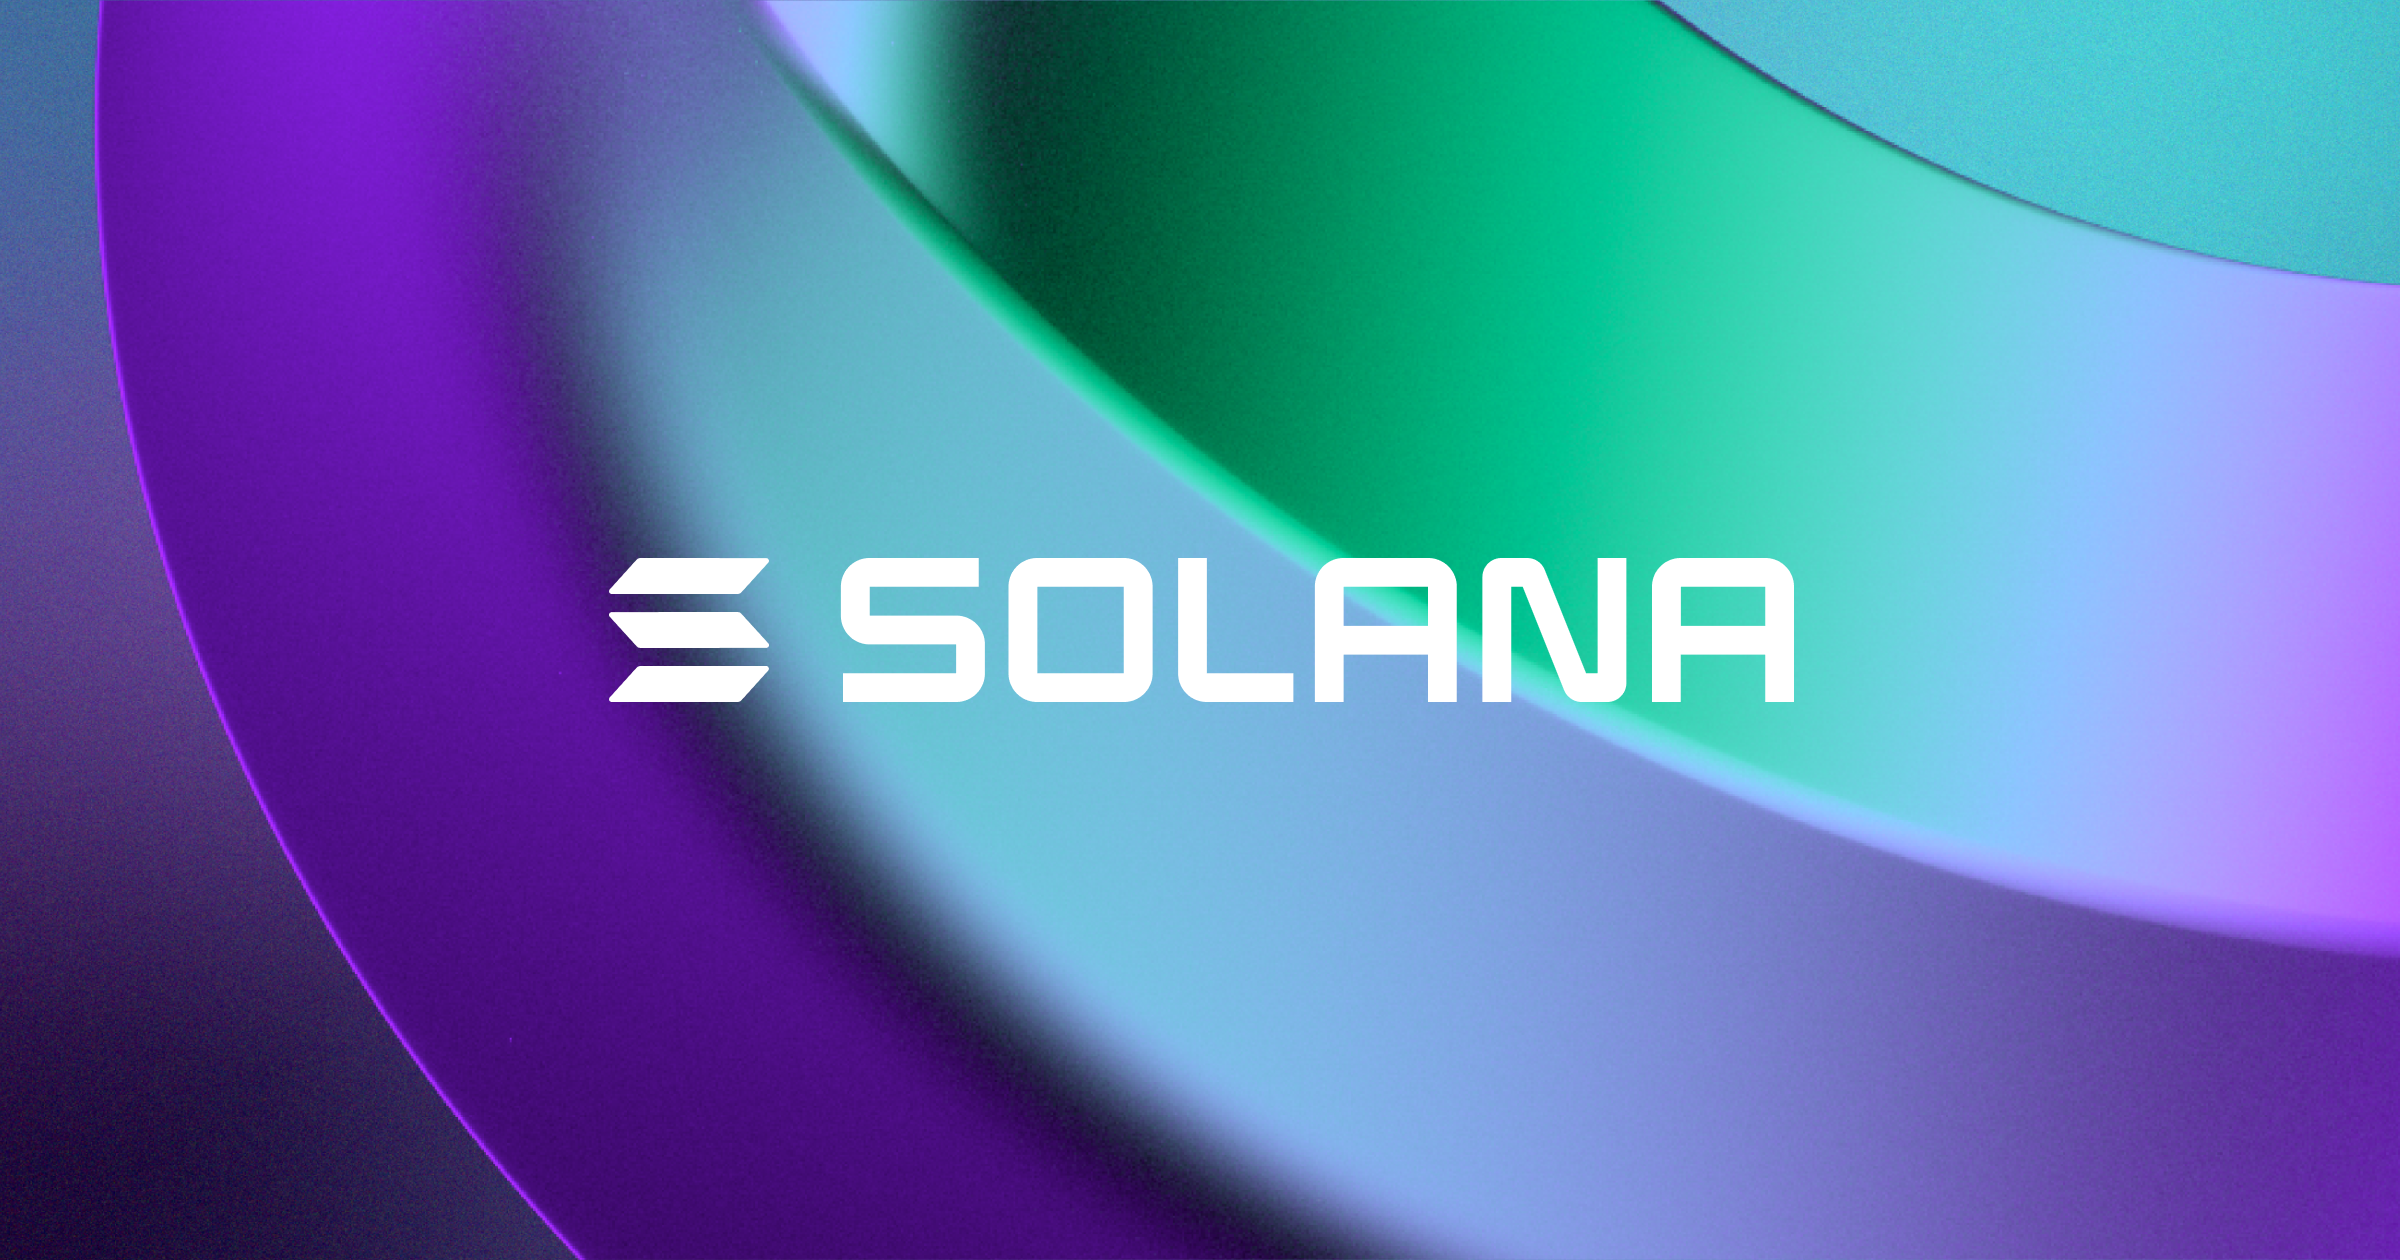 Solana raggiunge un nuovo massimo storico e supera Cardano - sharing card